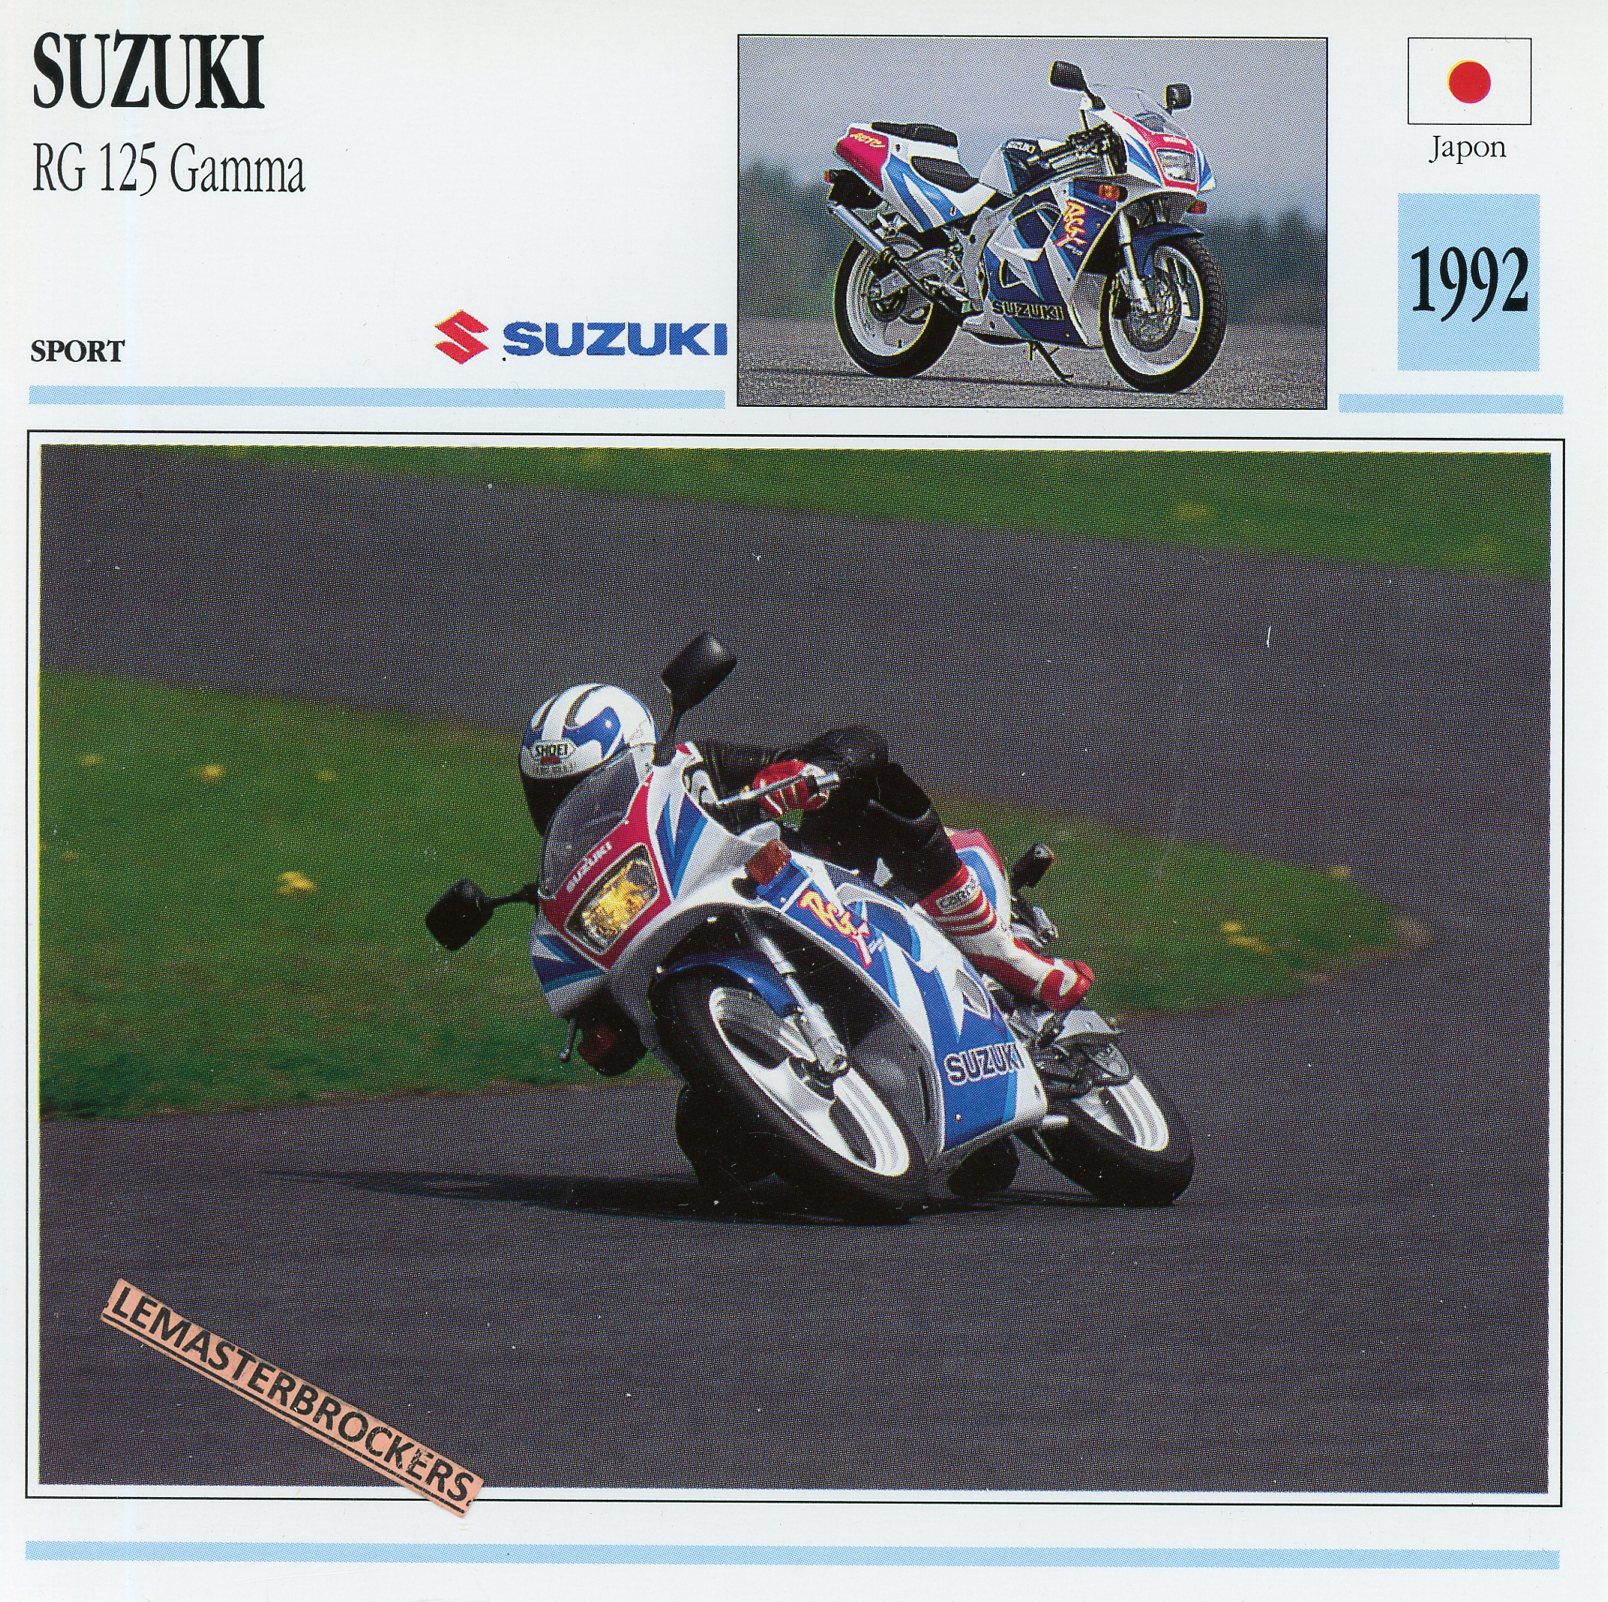 SUZUKI-RG125-GAMMA-1992-FICHE-MOTO-LEMASTERBROCKERS